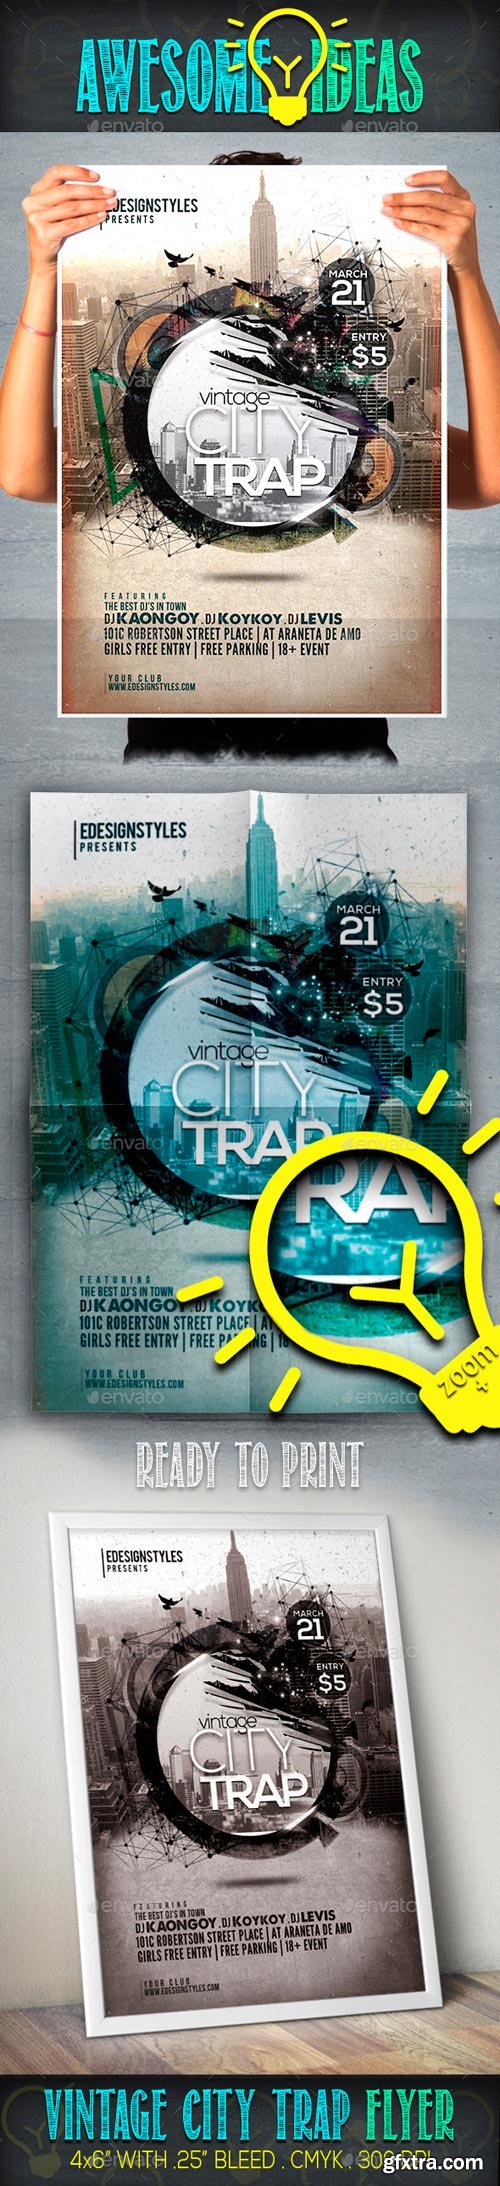 GR - VIntage City Trap Flyer